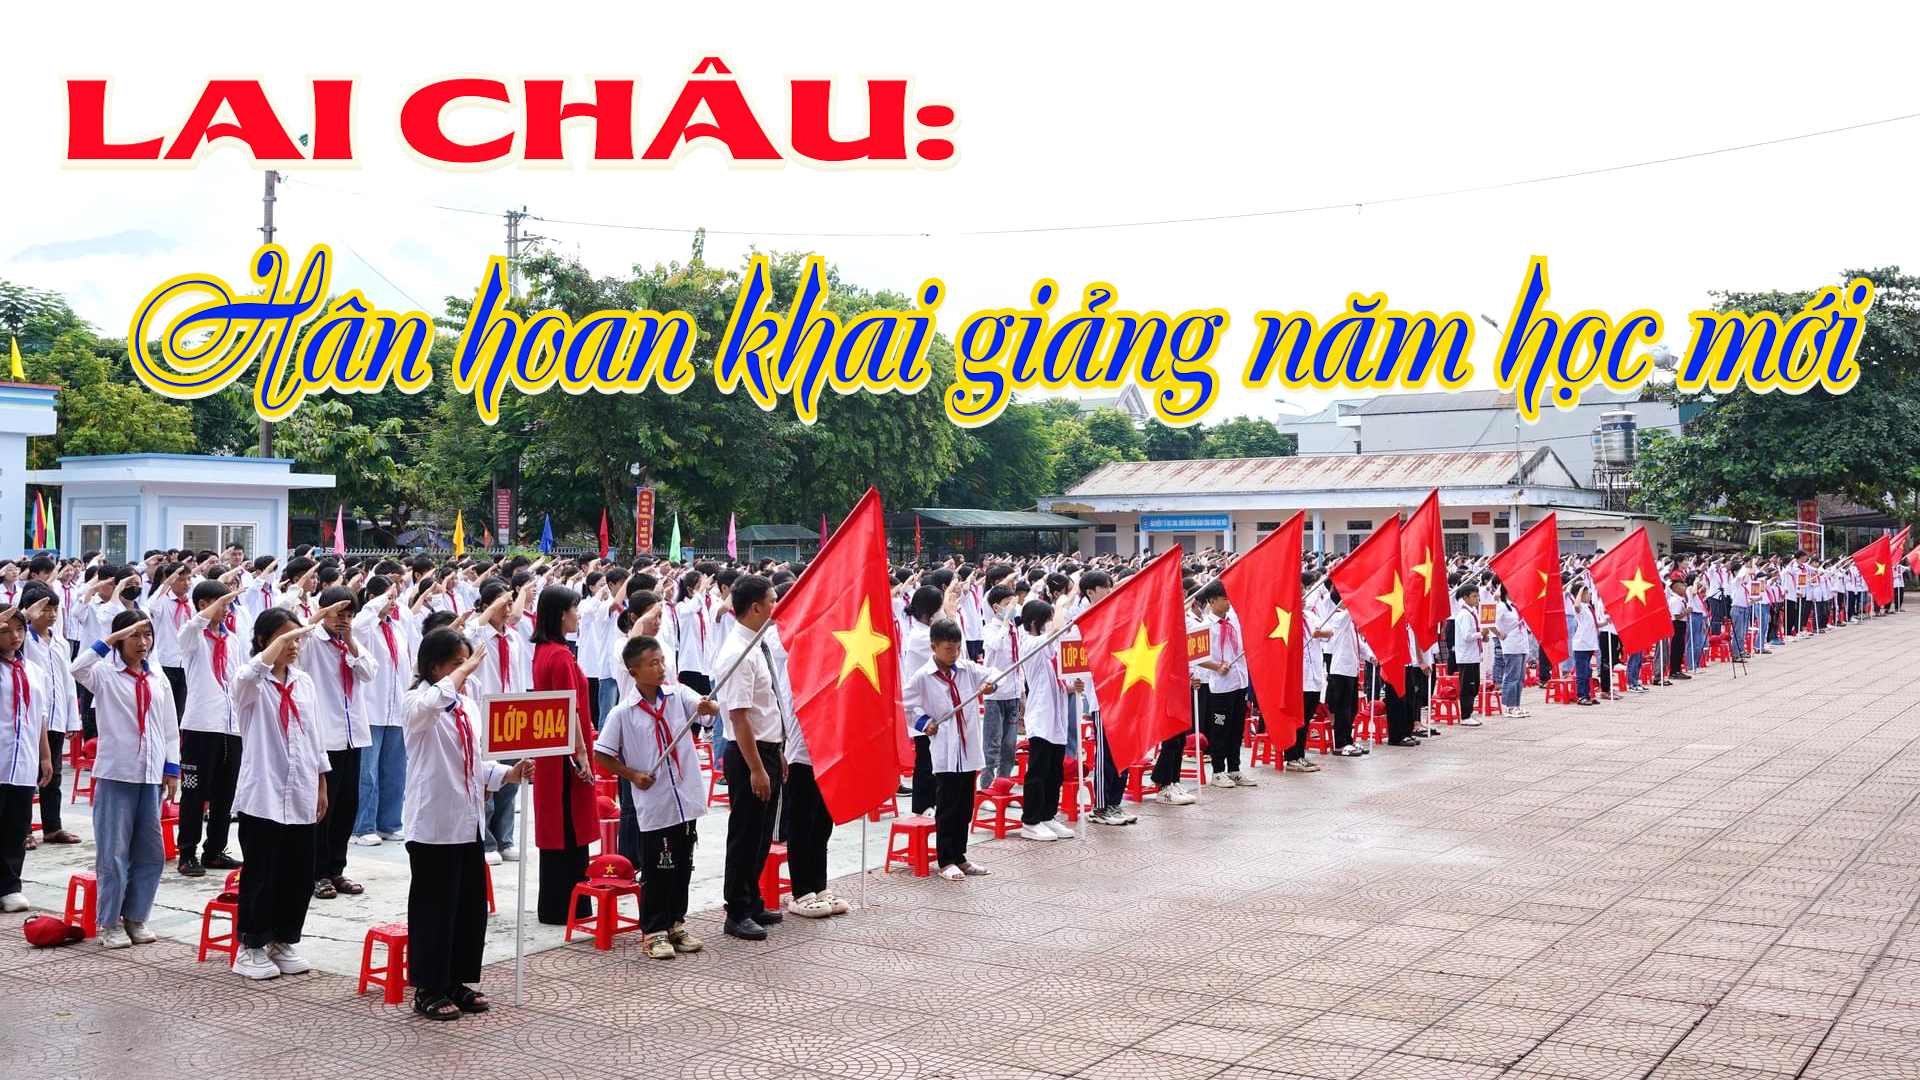 [05/09/2023 14:59:17] Dinh Tung Phuong: Cán bộ, giáo viên, học sinh Trường THCS thị trấn Tân Uyên chào mừng năm học mới. [02/09/2023 16:38:47] Pham Phuong Lan: .